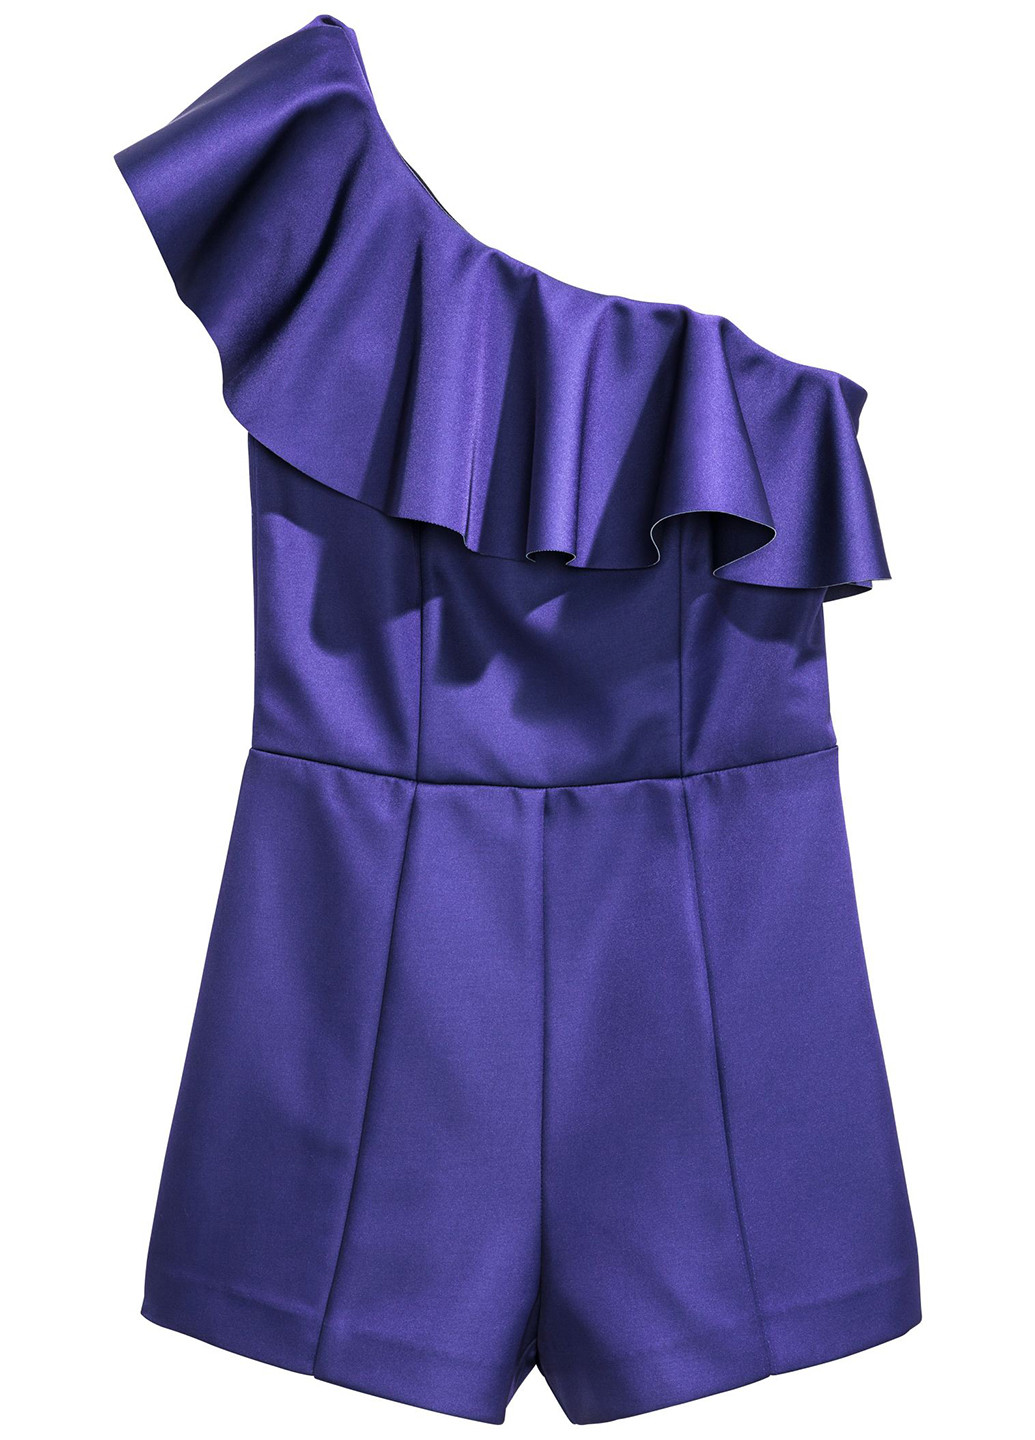 Комбинезон H&M комбинезон-шорты однотонный фиолетовый кэжуал атлас, полиэстер